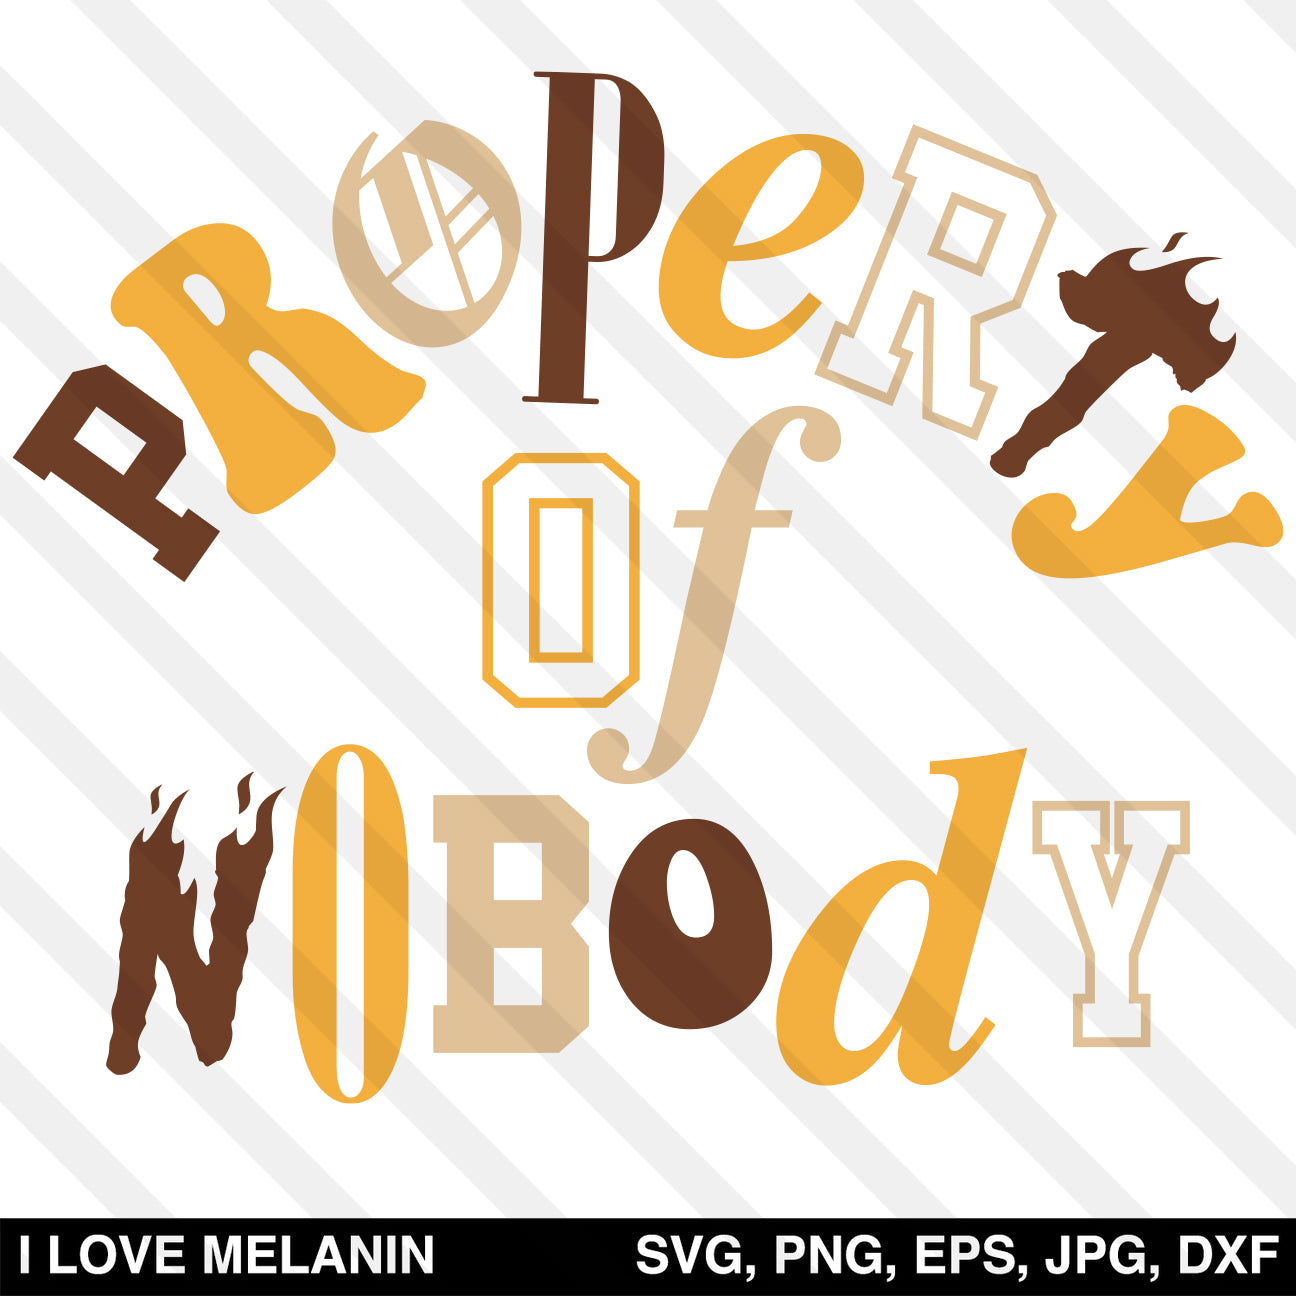 Property Of Nobody SVG